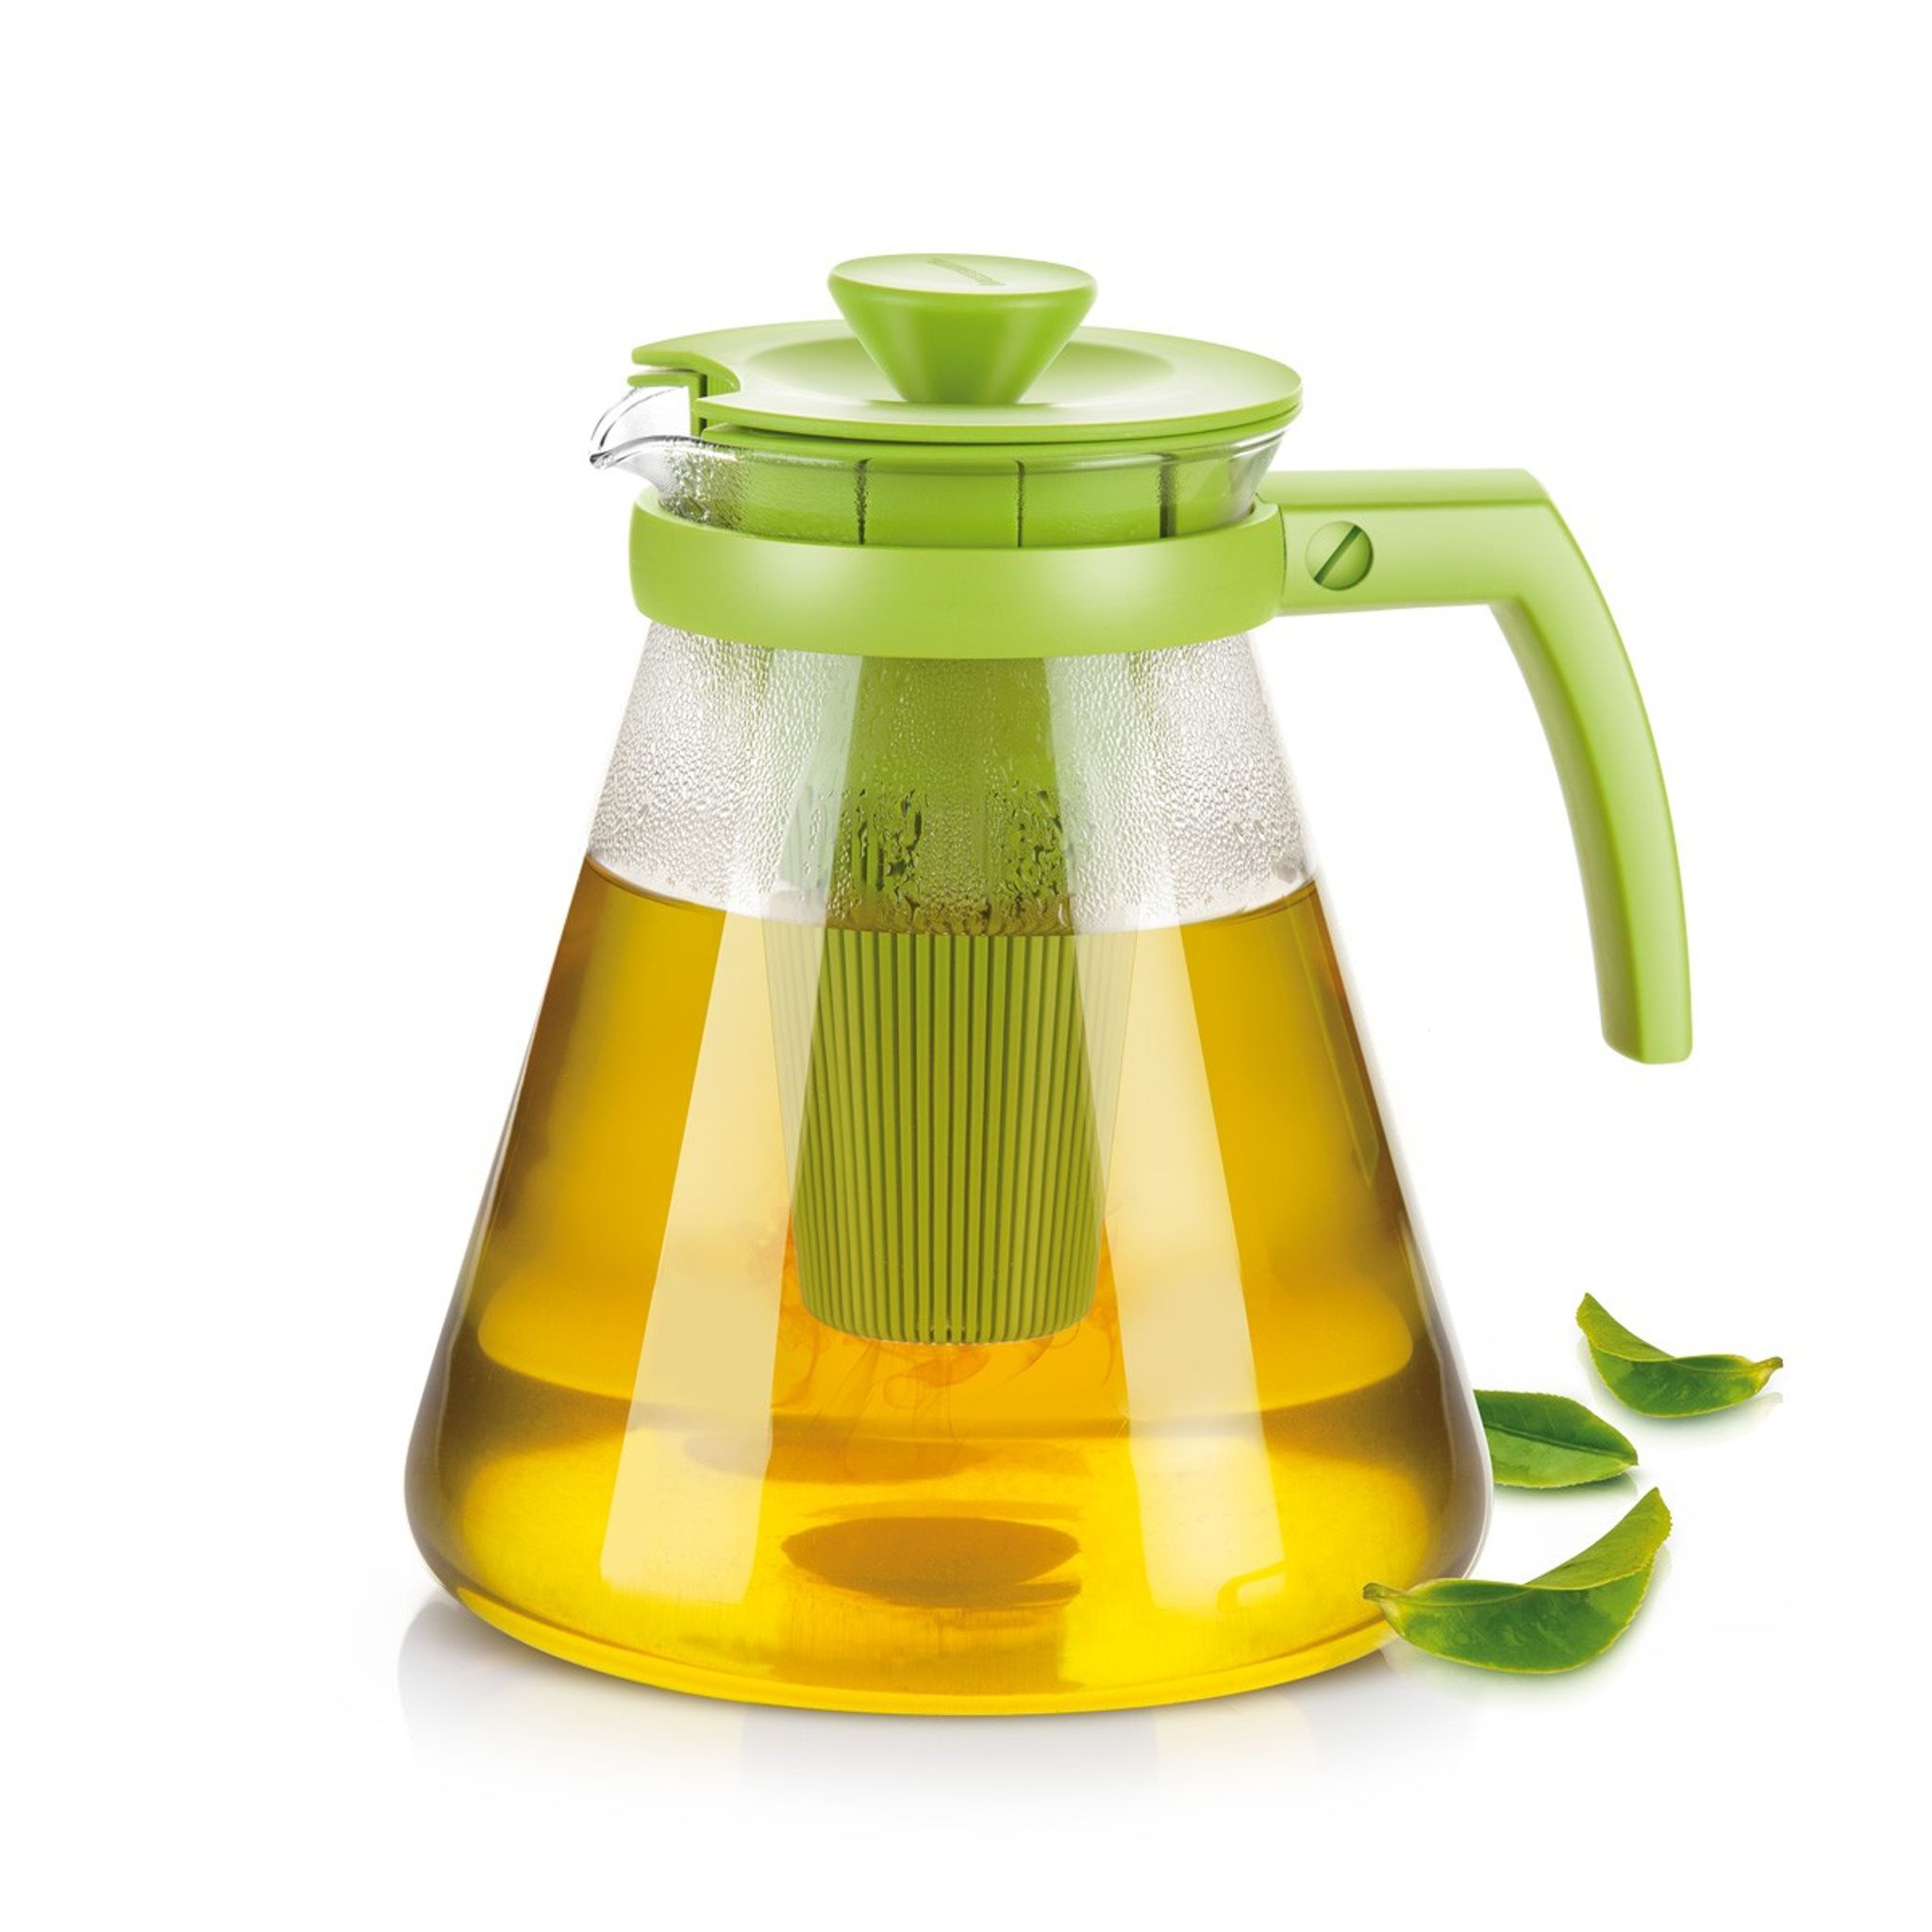 TEO TONE teáskanna, áztatószűrővel, 1,7 l, zöld